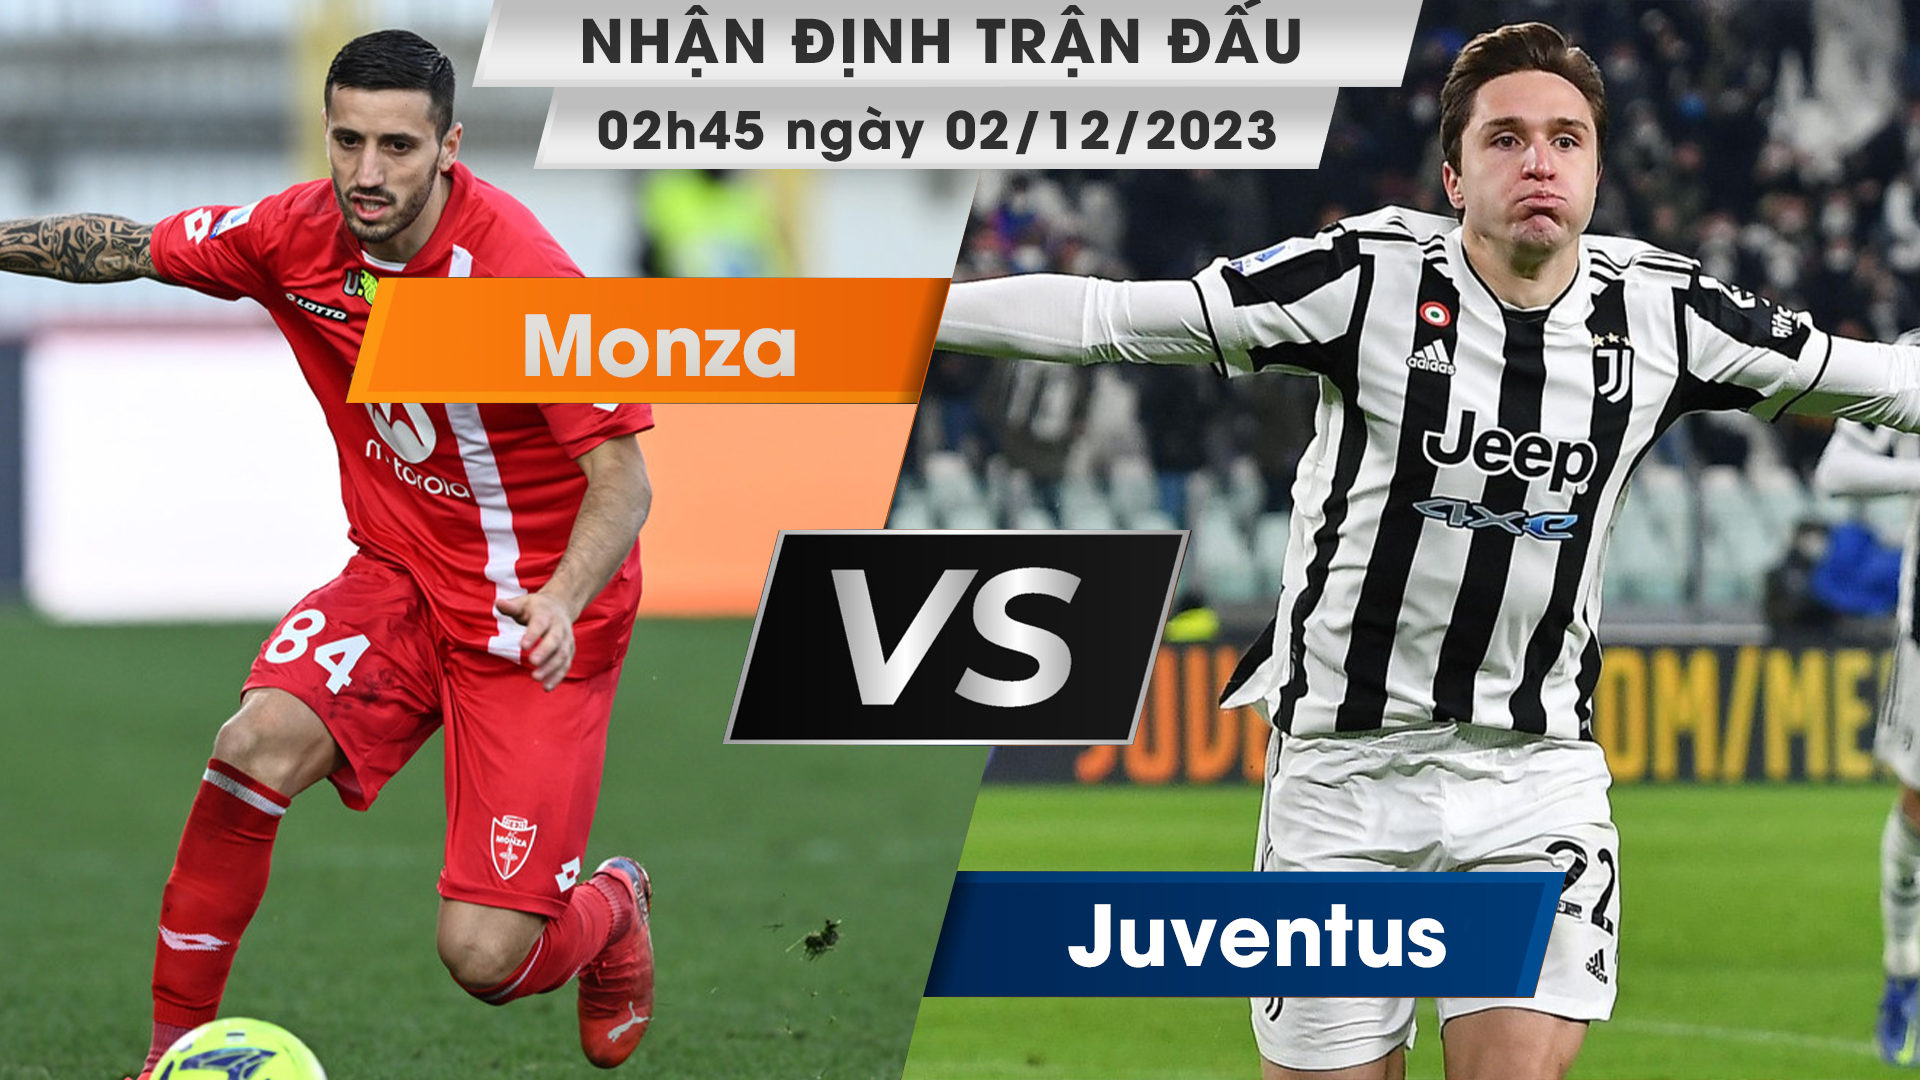 Nhận định, dự đoán Monza vs Juventus, 02h45 ngày 02/12/2023